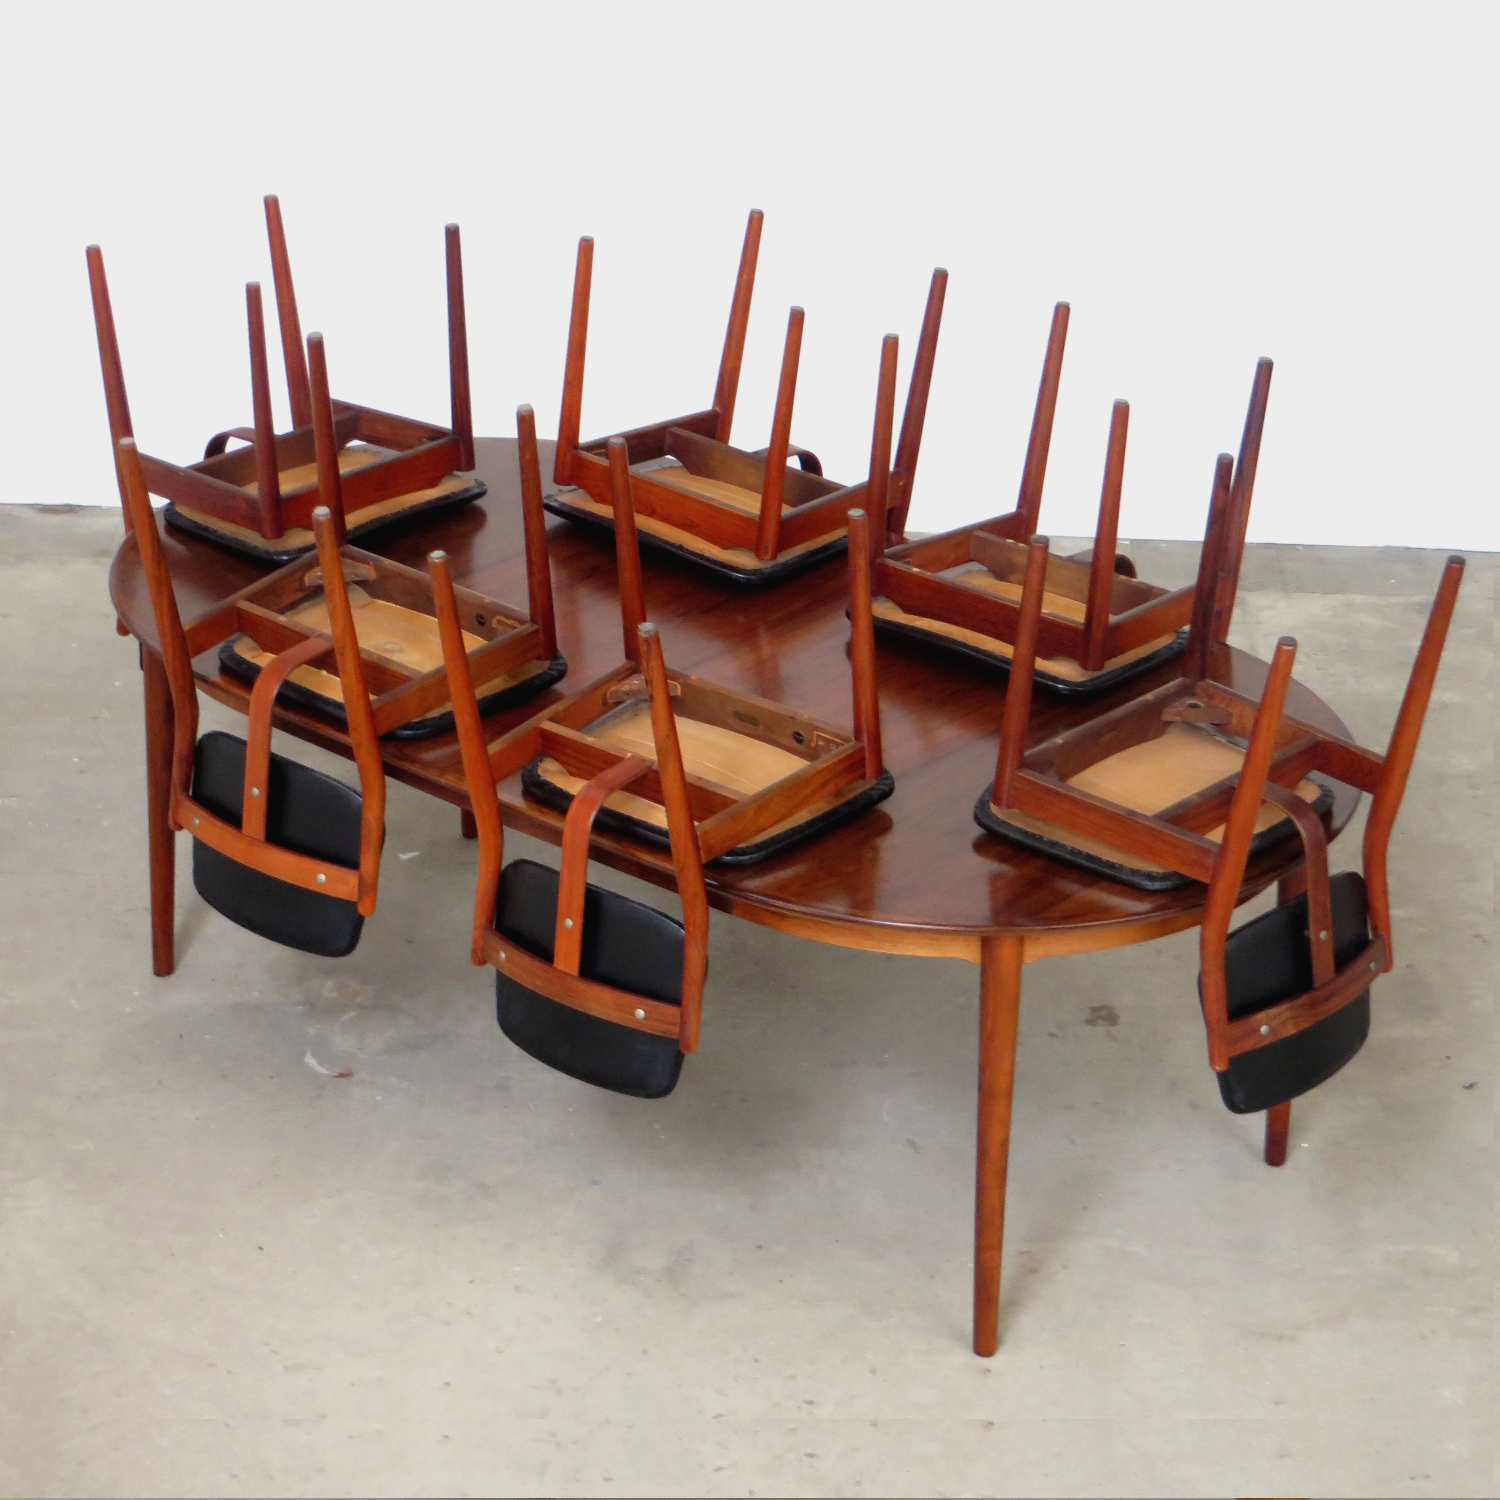 Foto van de tafel met de zes stoelen omgekeerd op het tafelblad